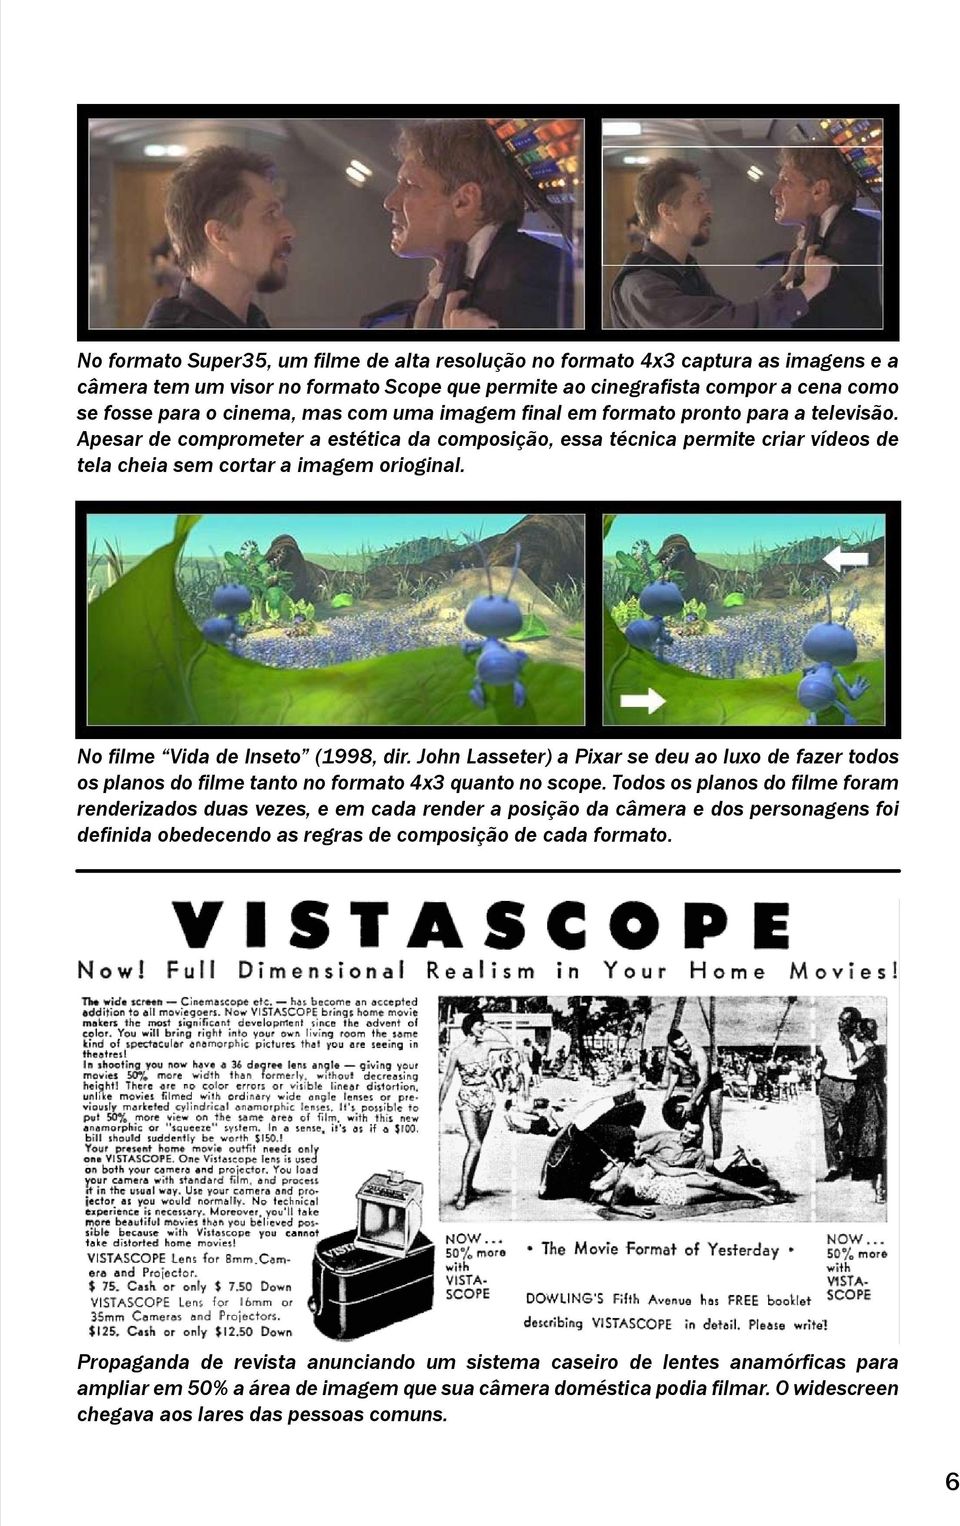 No filme Vida de Inseto (1998, dir. John Lasseter) a Pixar se deu ao luxo de fazer todos os planos do filme tanto no formato 4x3 quanto no scope.